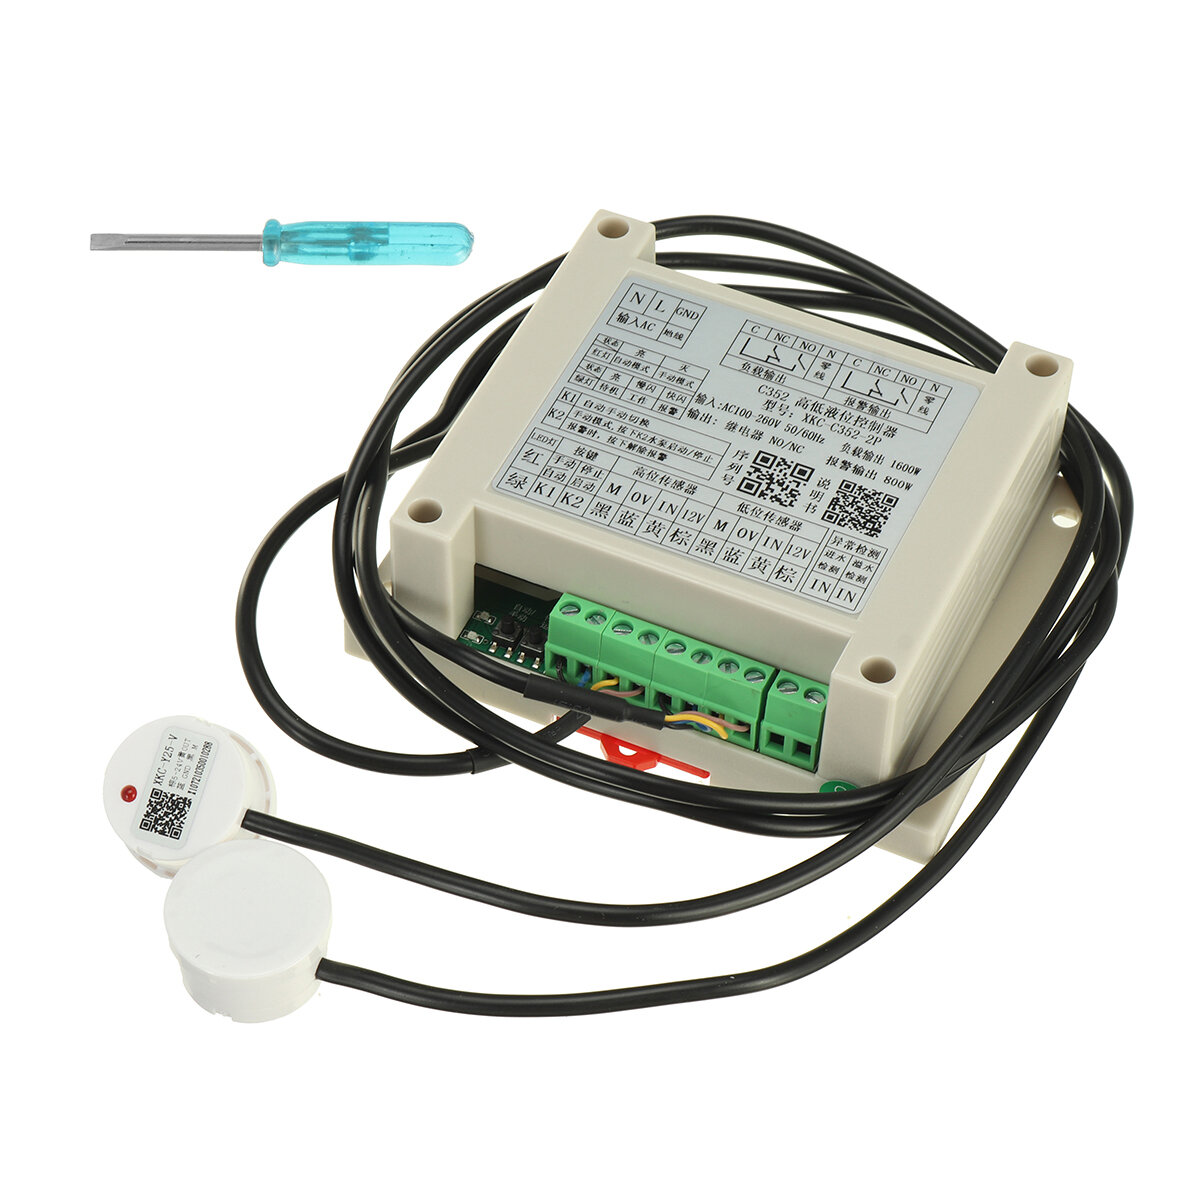 XKC-C352-2P 1M Automatic Control High and Low Liquid Level Sensor Intelligent Controller Non-contact Sensor Module Detec